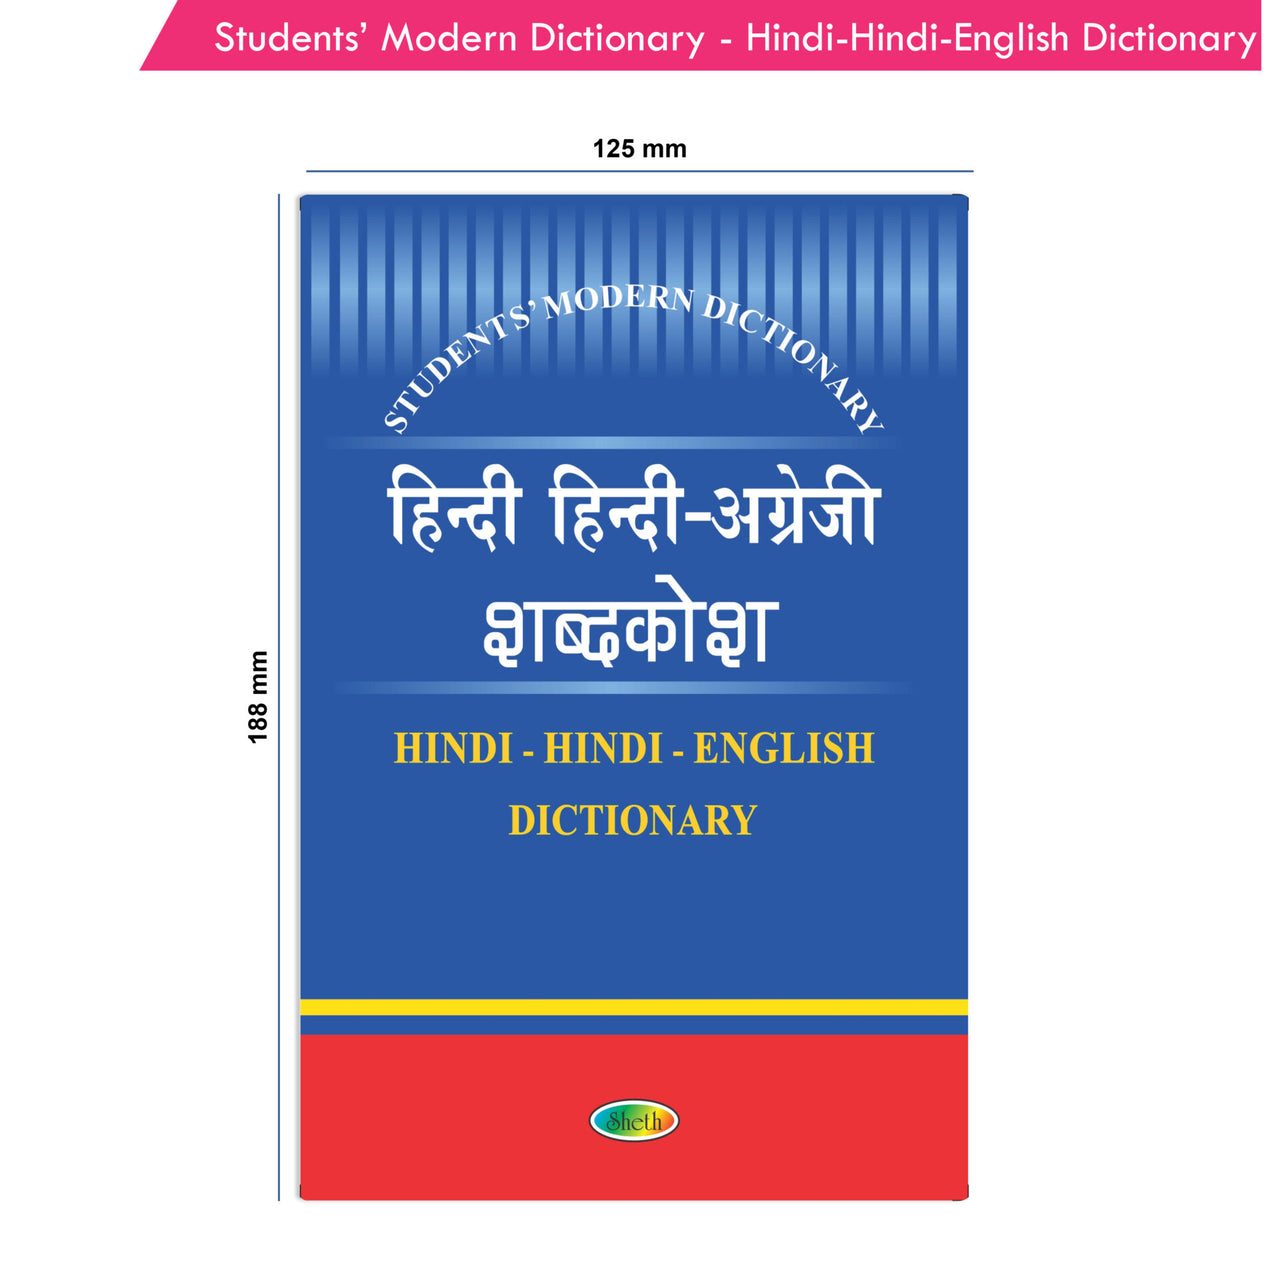 Students' Modern Dictionary - Hindi-Hindi-English Dictionary *Noun, Pronoun, Adjective, Adverb,Adverb, Verb, Prefix - Distacart